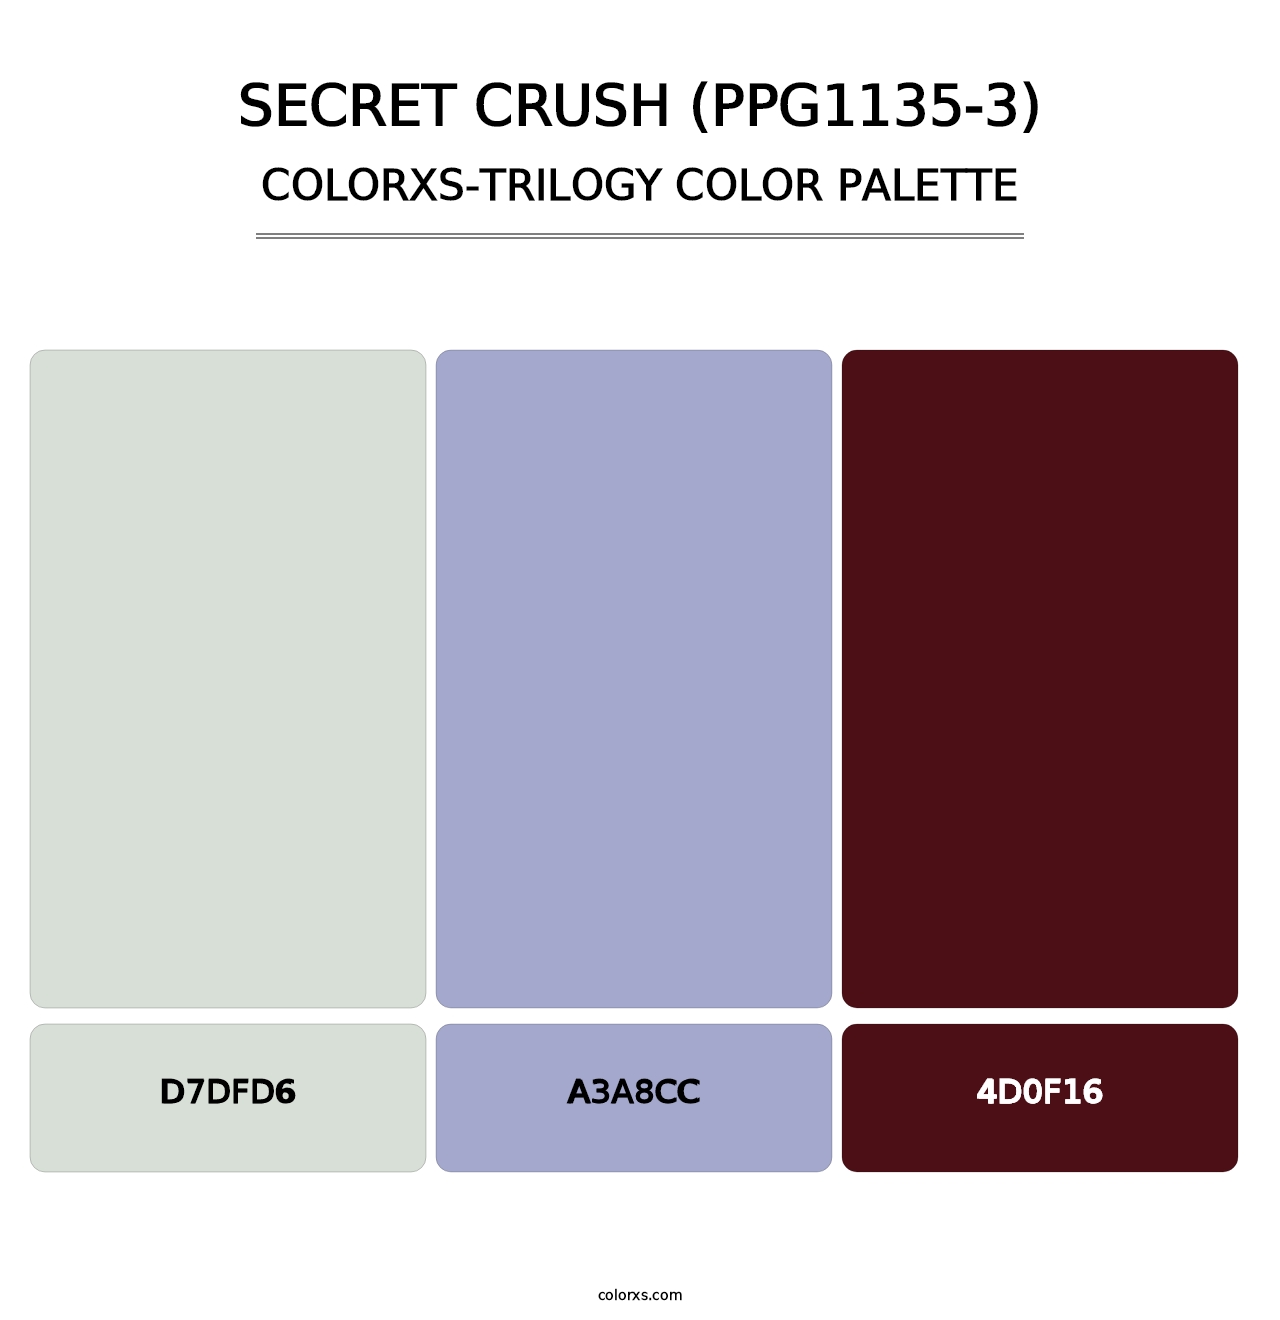 Secret Crush (PPG1135-3) - Colorxs Trilogy Palette